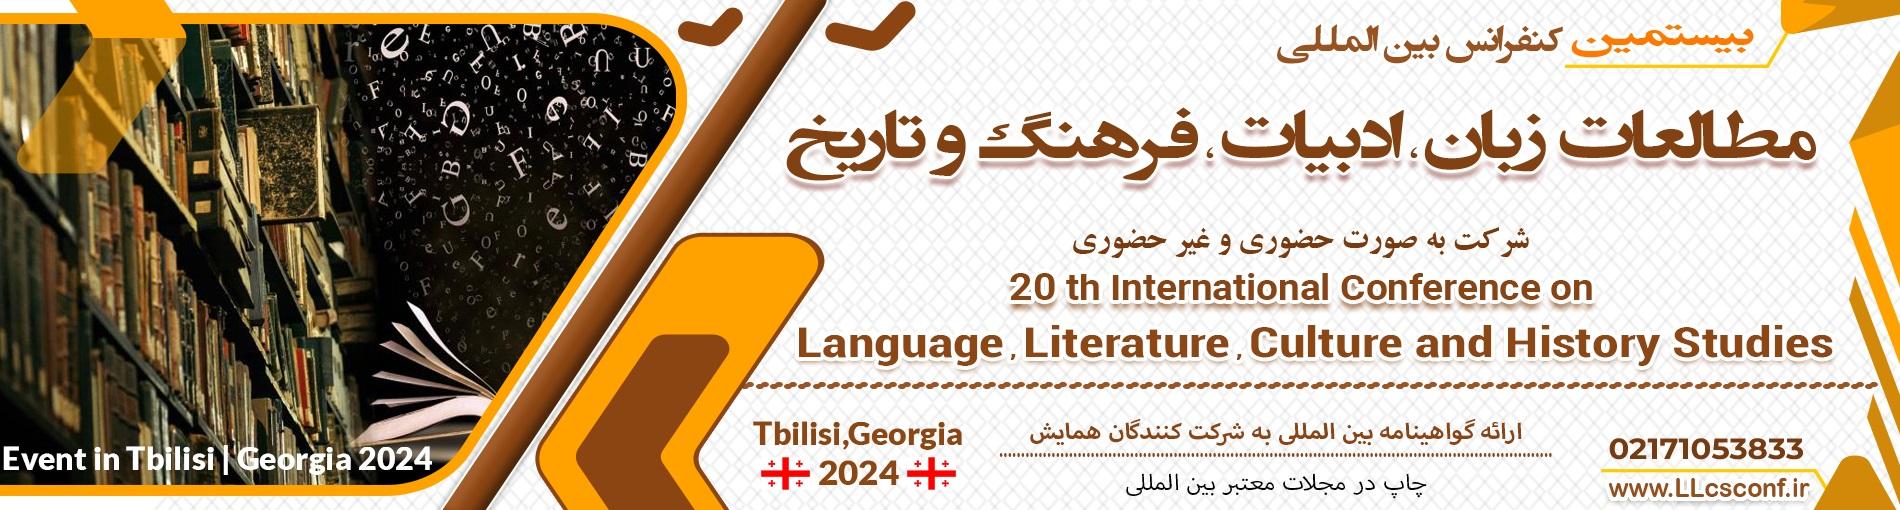 همایش بین المللی مطالعات زبان،ادبیات، فرهنگ و تاریخ	